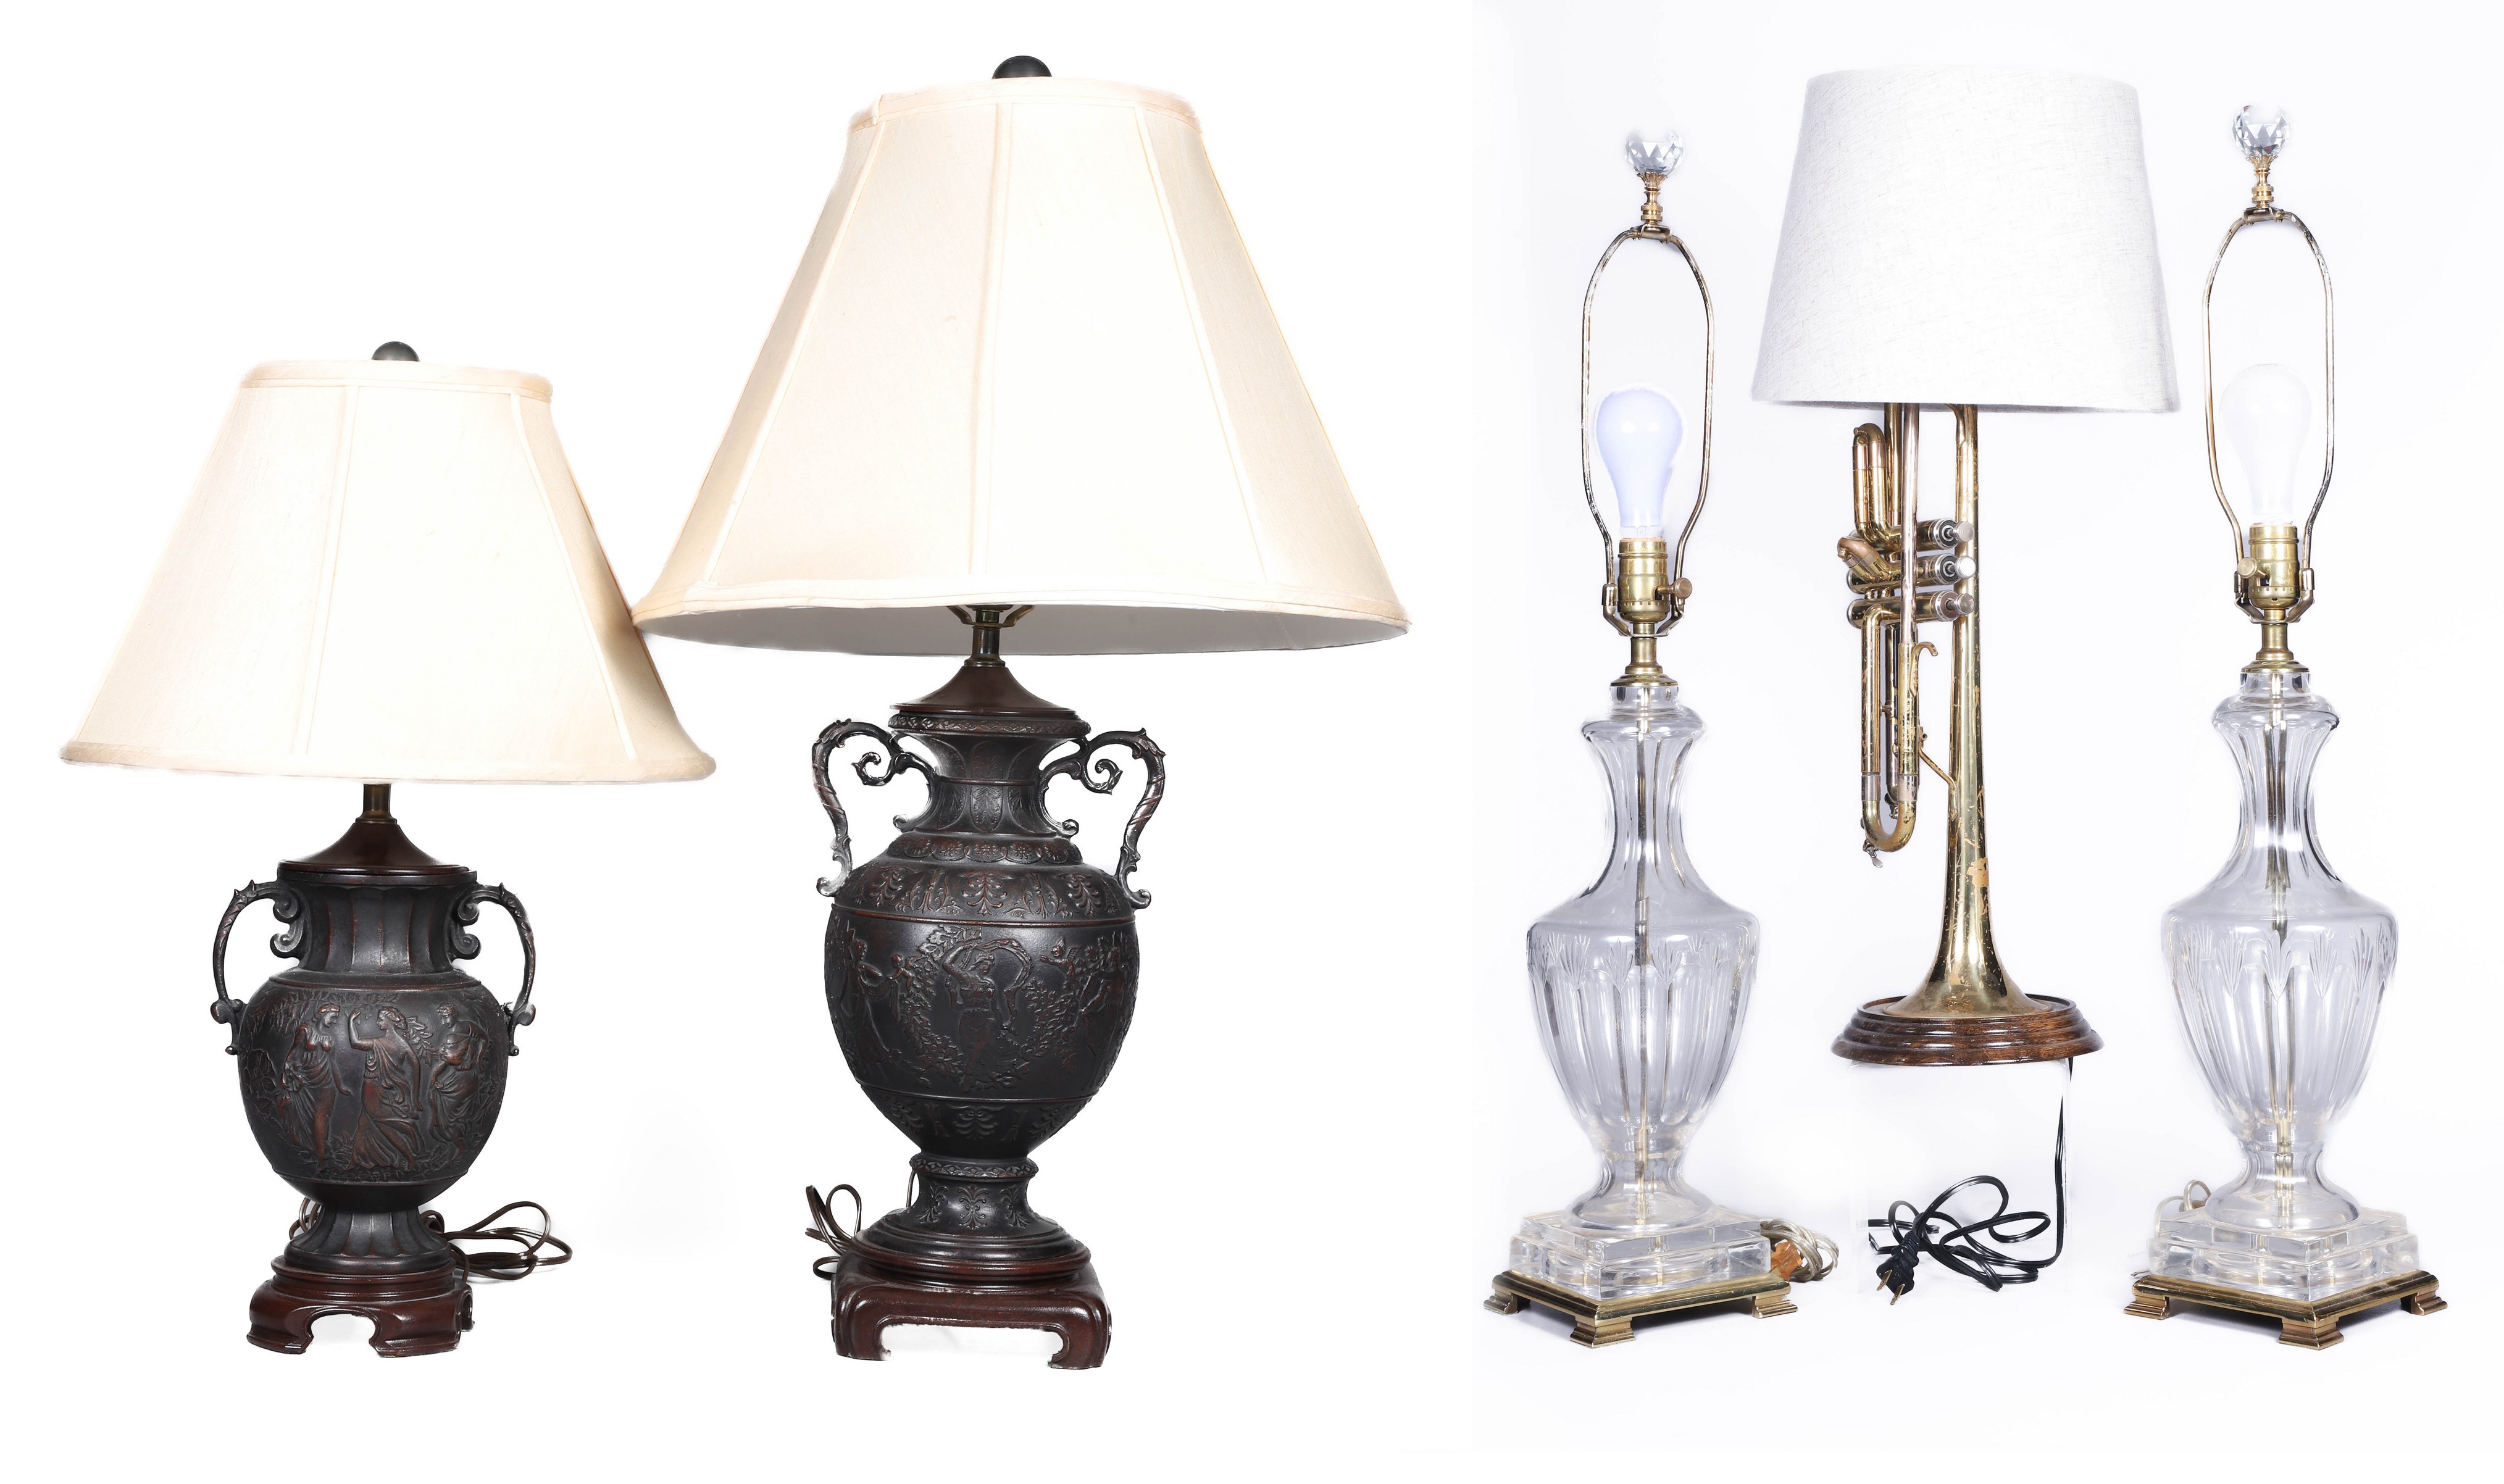  5 Decorative table lamps c o 317e4f